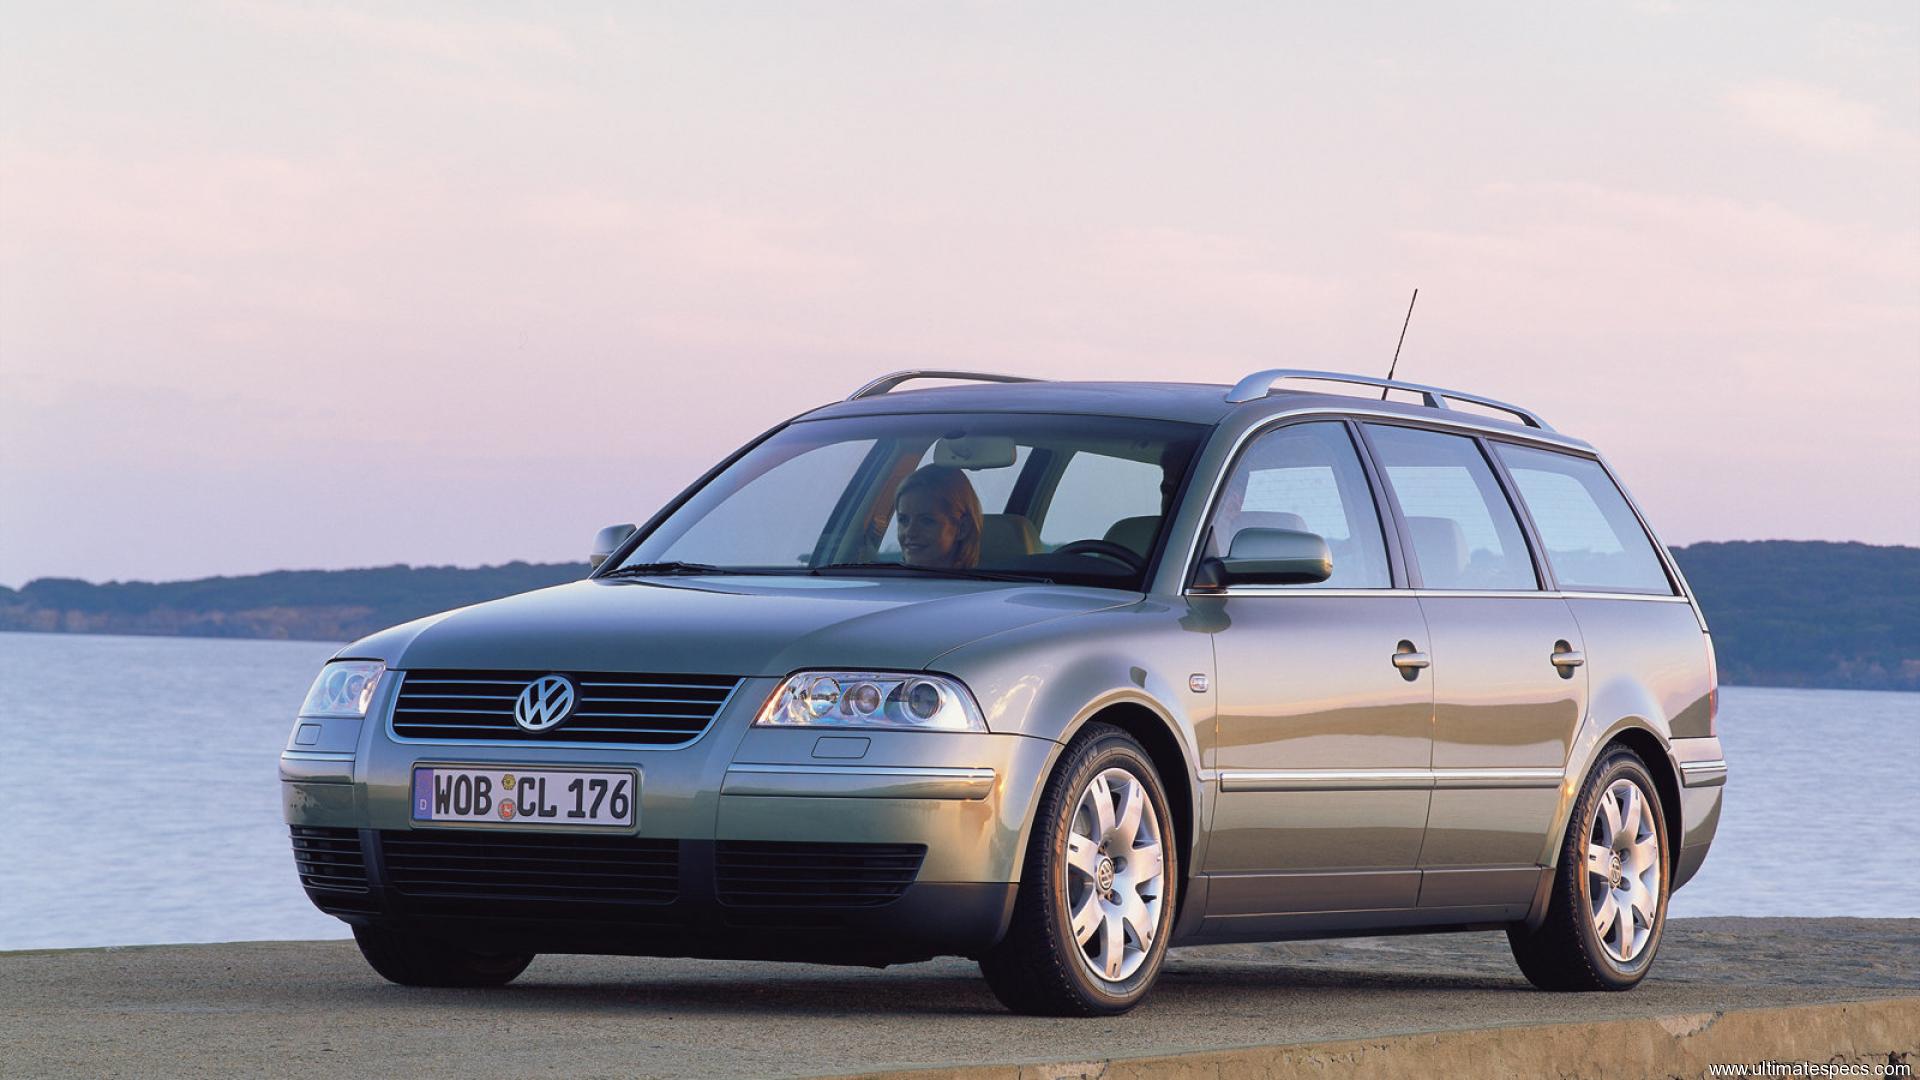 Пассат б5 1.8 универсал. Volkswagen Passat универсал 2000. Volkswagen Passat b5 универсал. Volkswagen Passat b5 variant. Фольксваген Пассат b5 универсал.